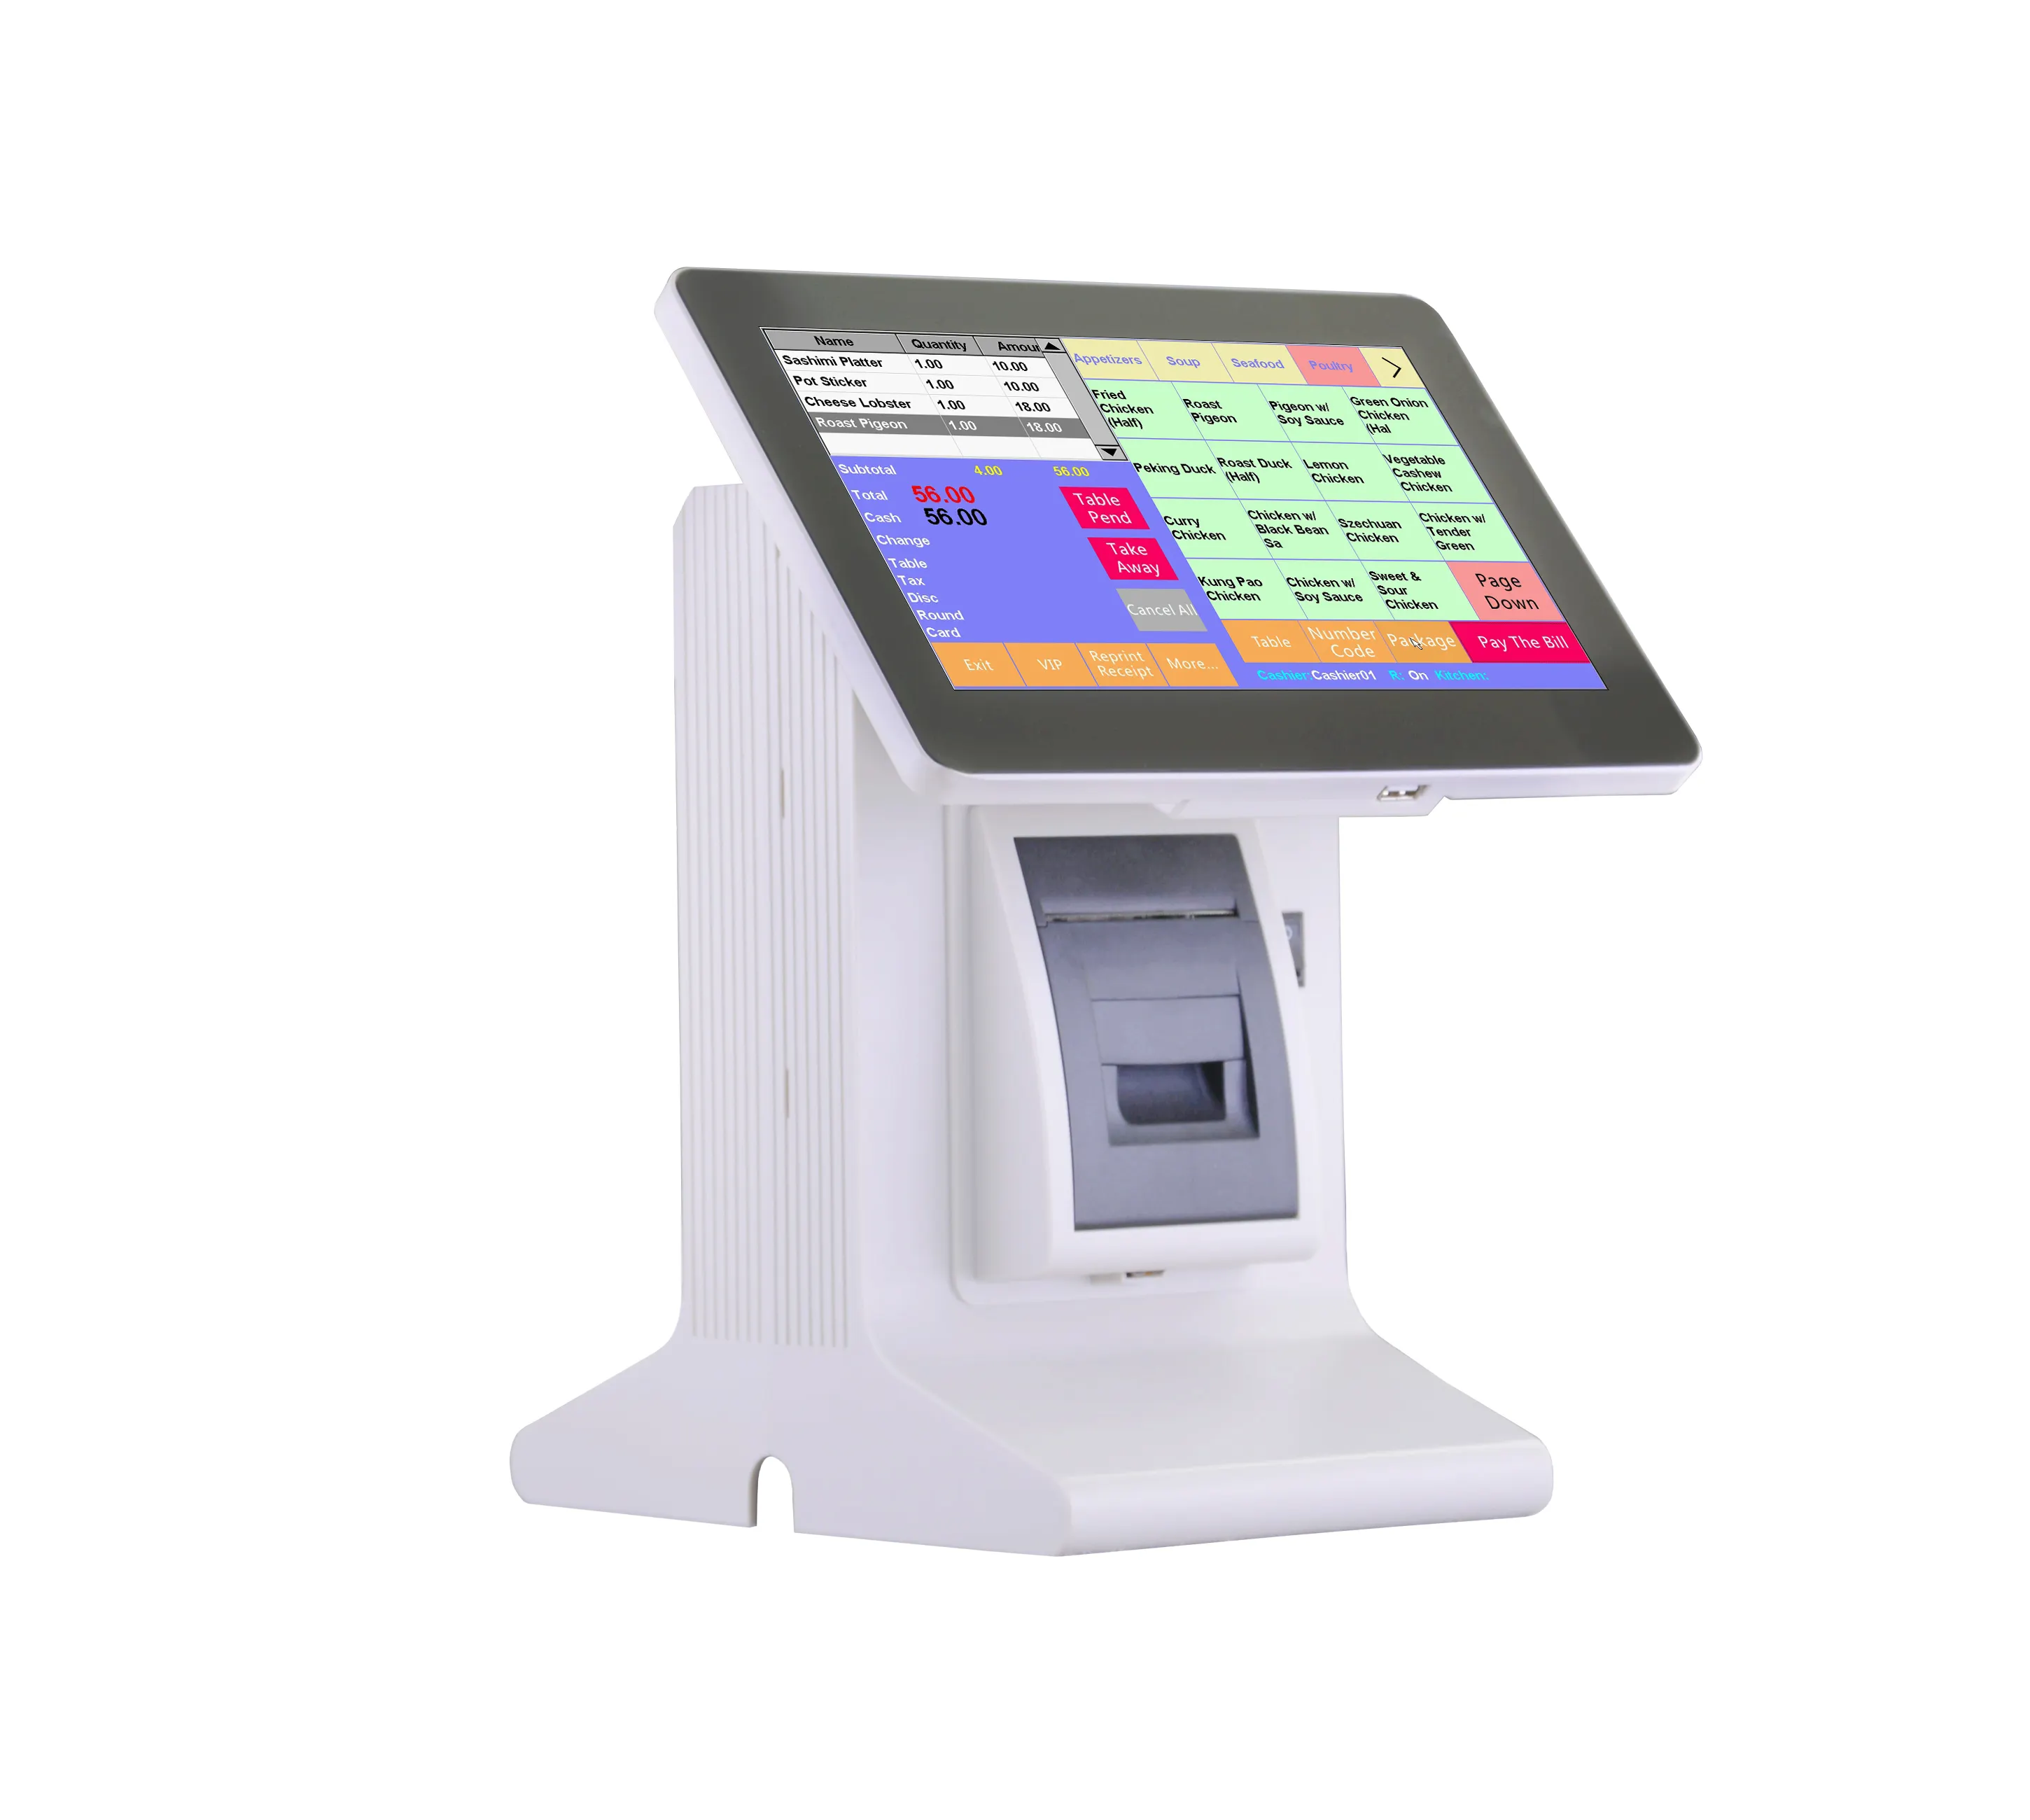 E86D günstige Kassenmaschine einfach zu bedienende All-in-One-Touchscreen-Kassenmaschine mit eingebautem Drucker und englischer Software